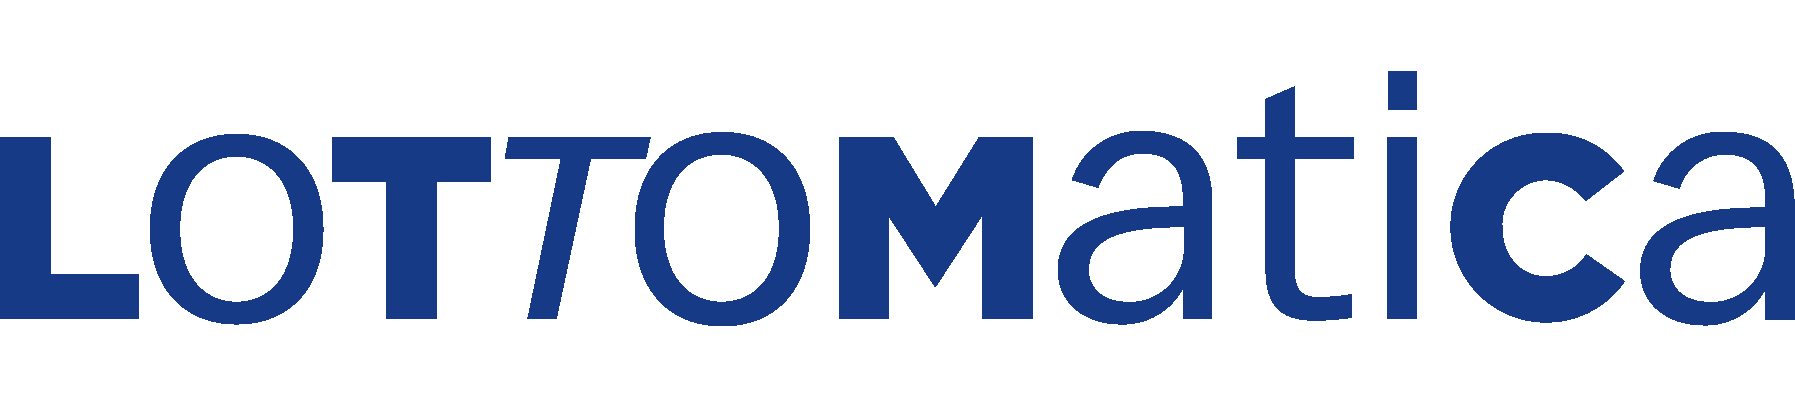 logo-lottomatica